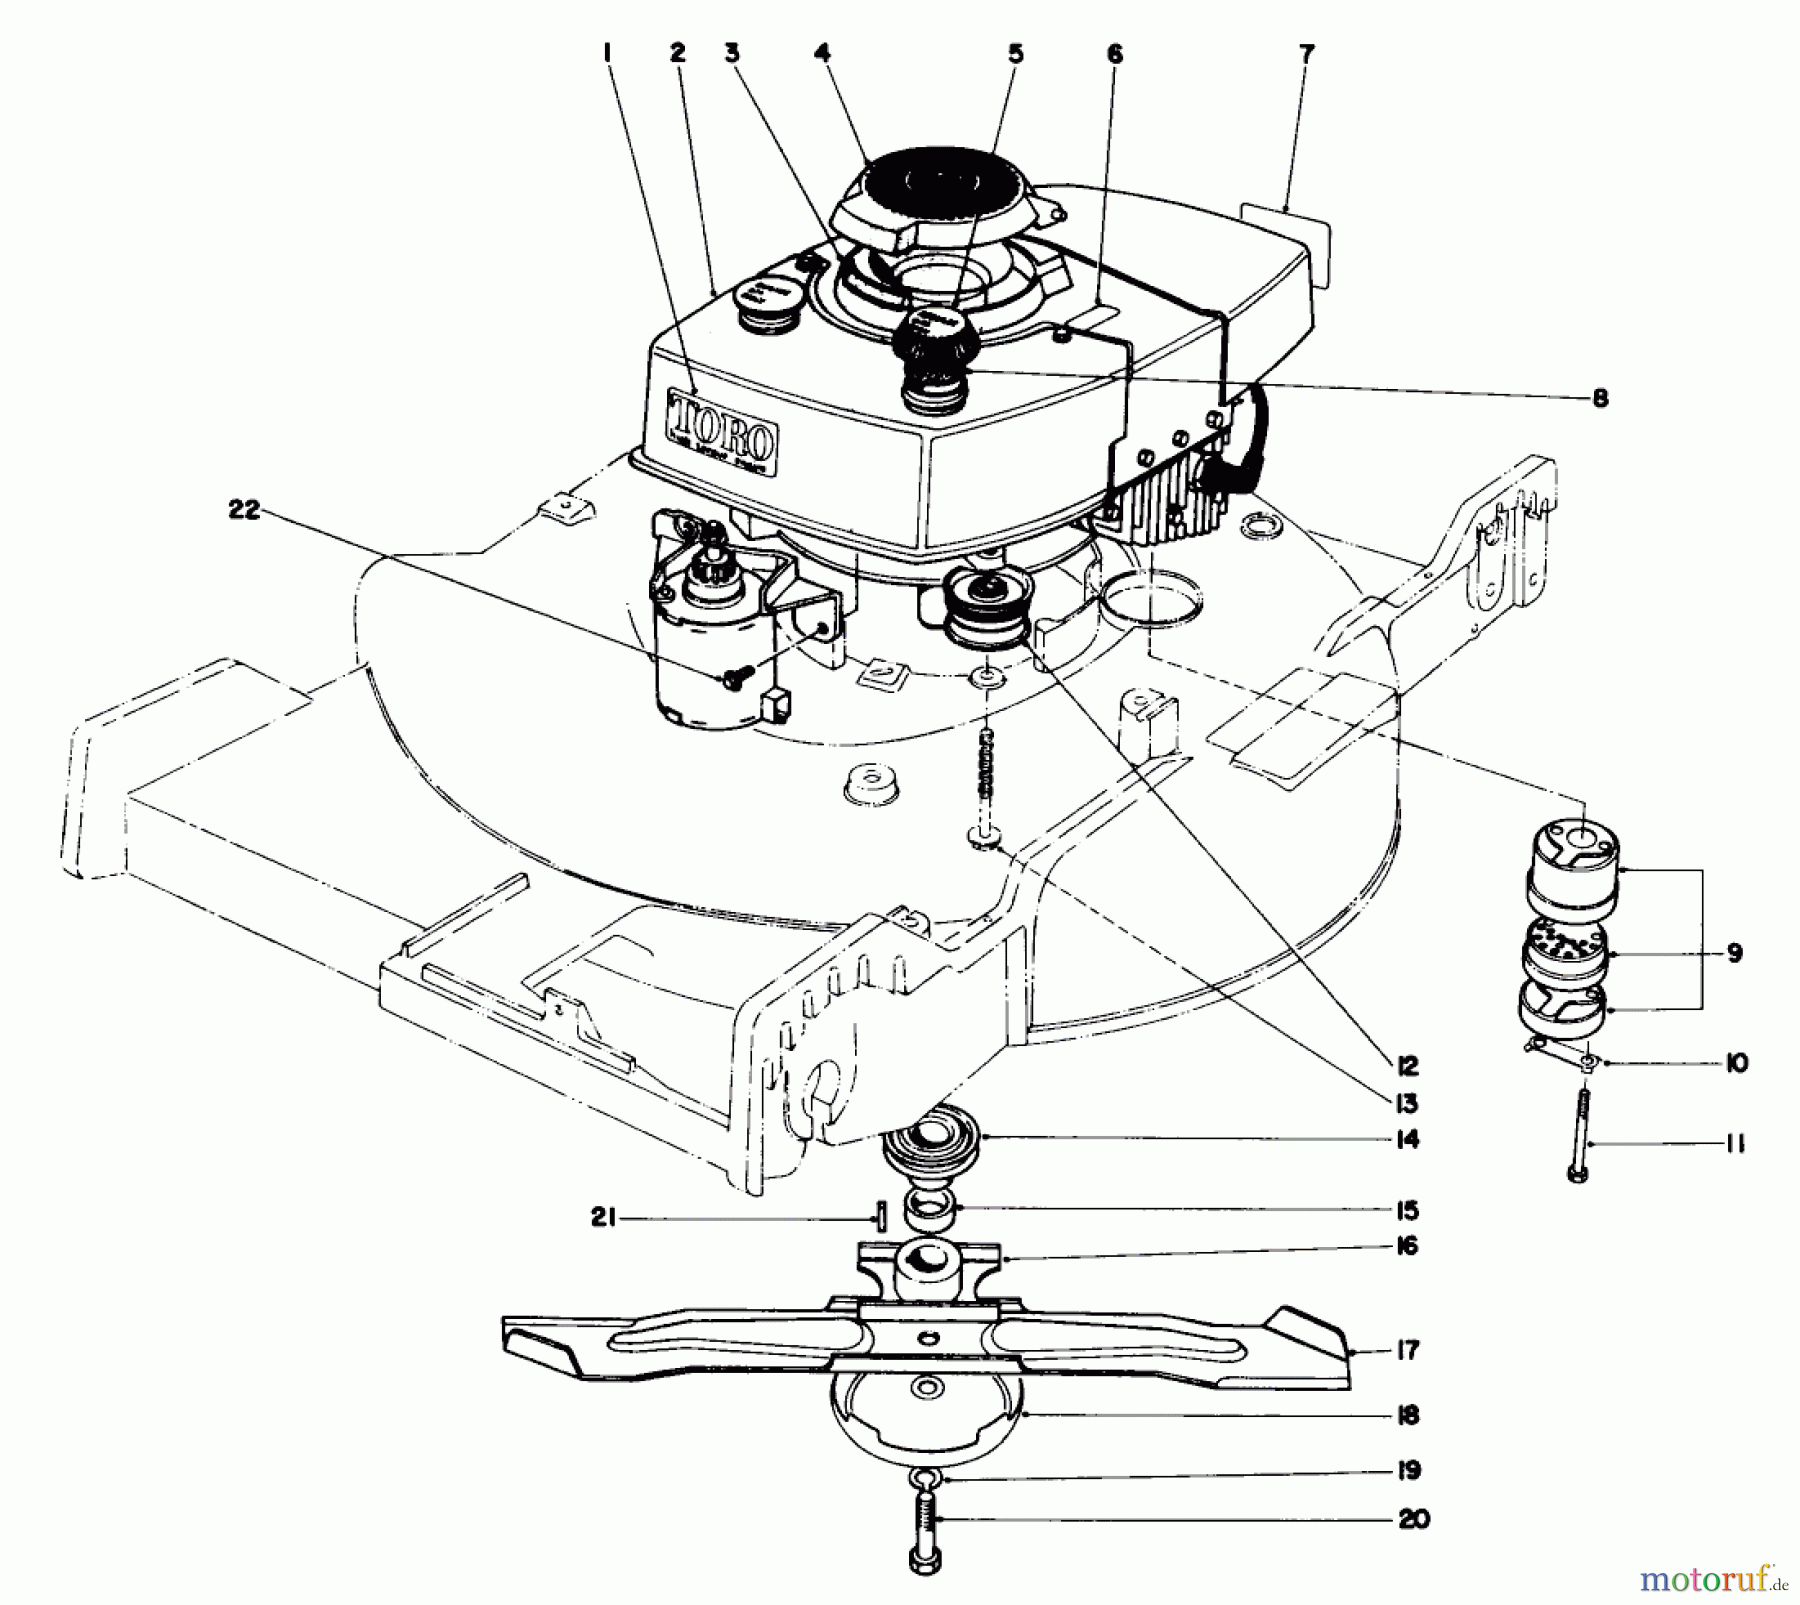  Toro Neu Mowers, Walk-Behind Seite 1 20660 - Toro Lawnmower, 1974 (4000001-4999999) ENGINE ASSEMBLY MODEL NO. 20660